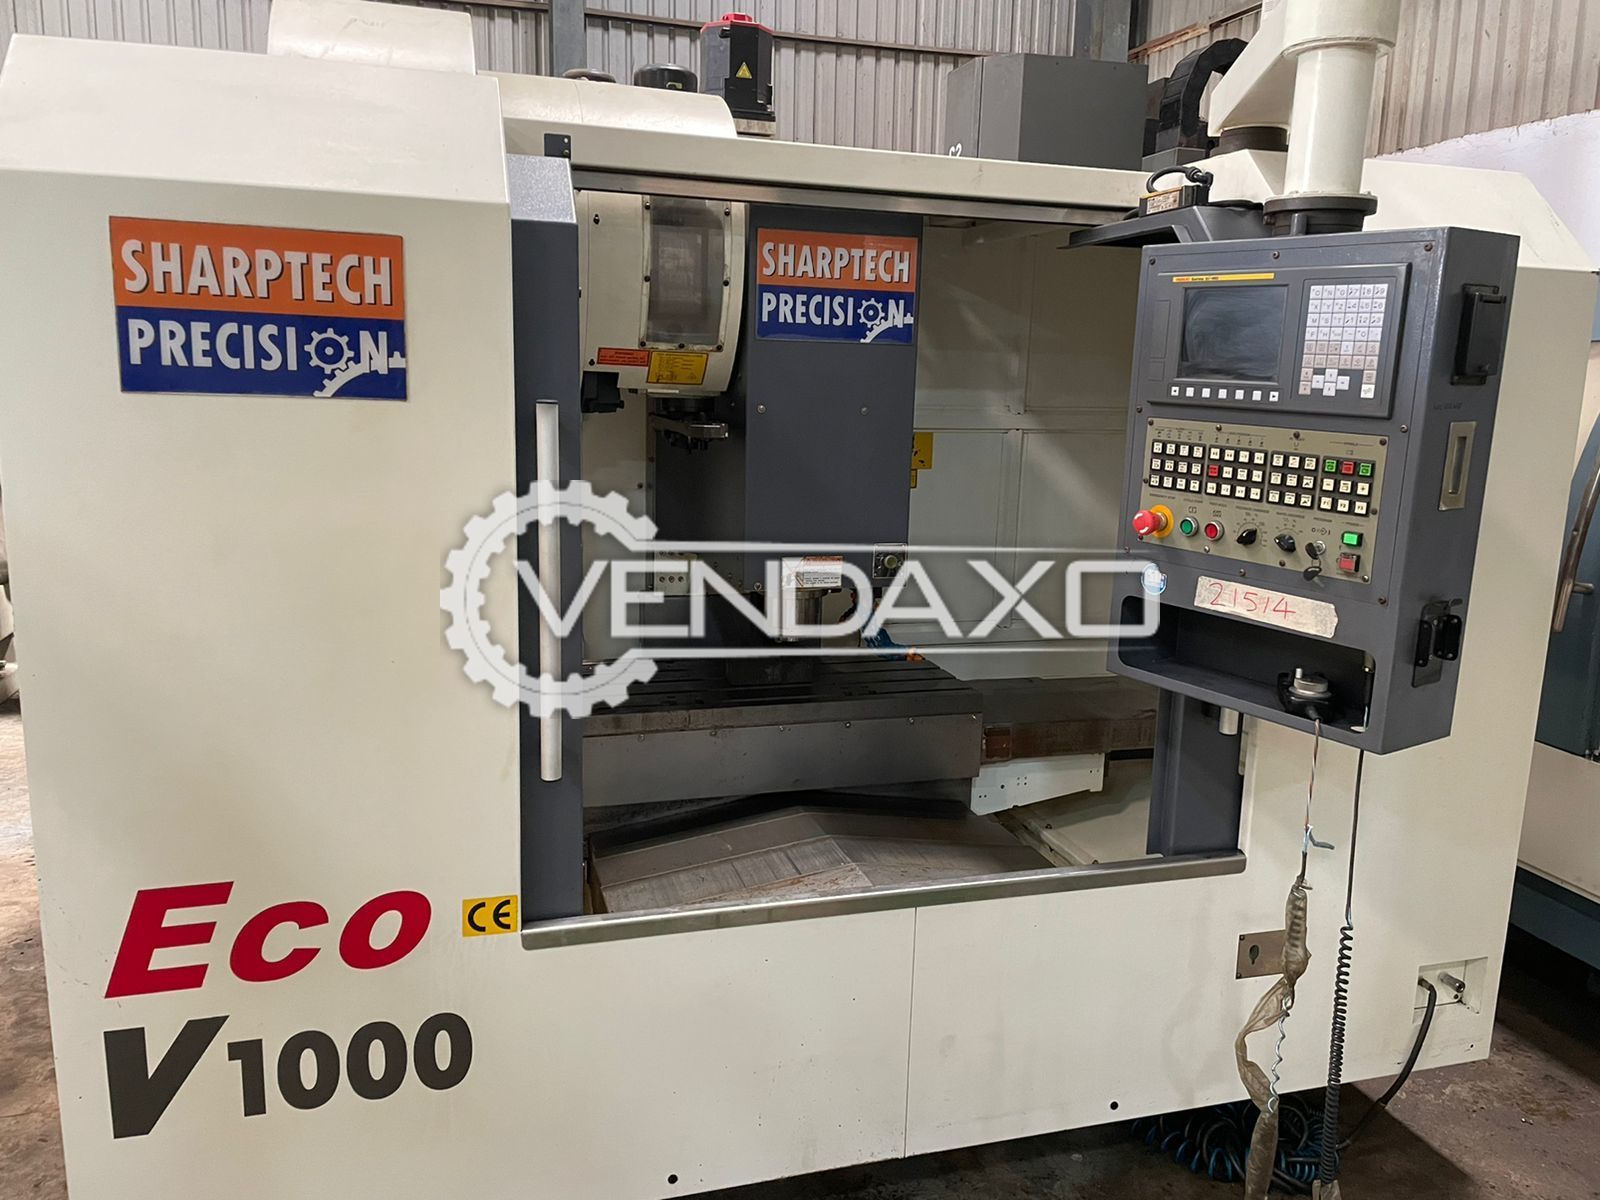 Sharptech ECO V1000 CNC Vertical Machining Center VMC - 1000 x 550 x 550 mm